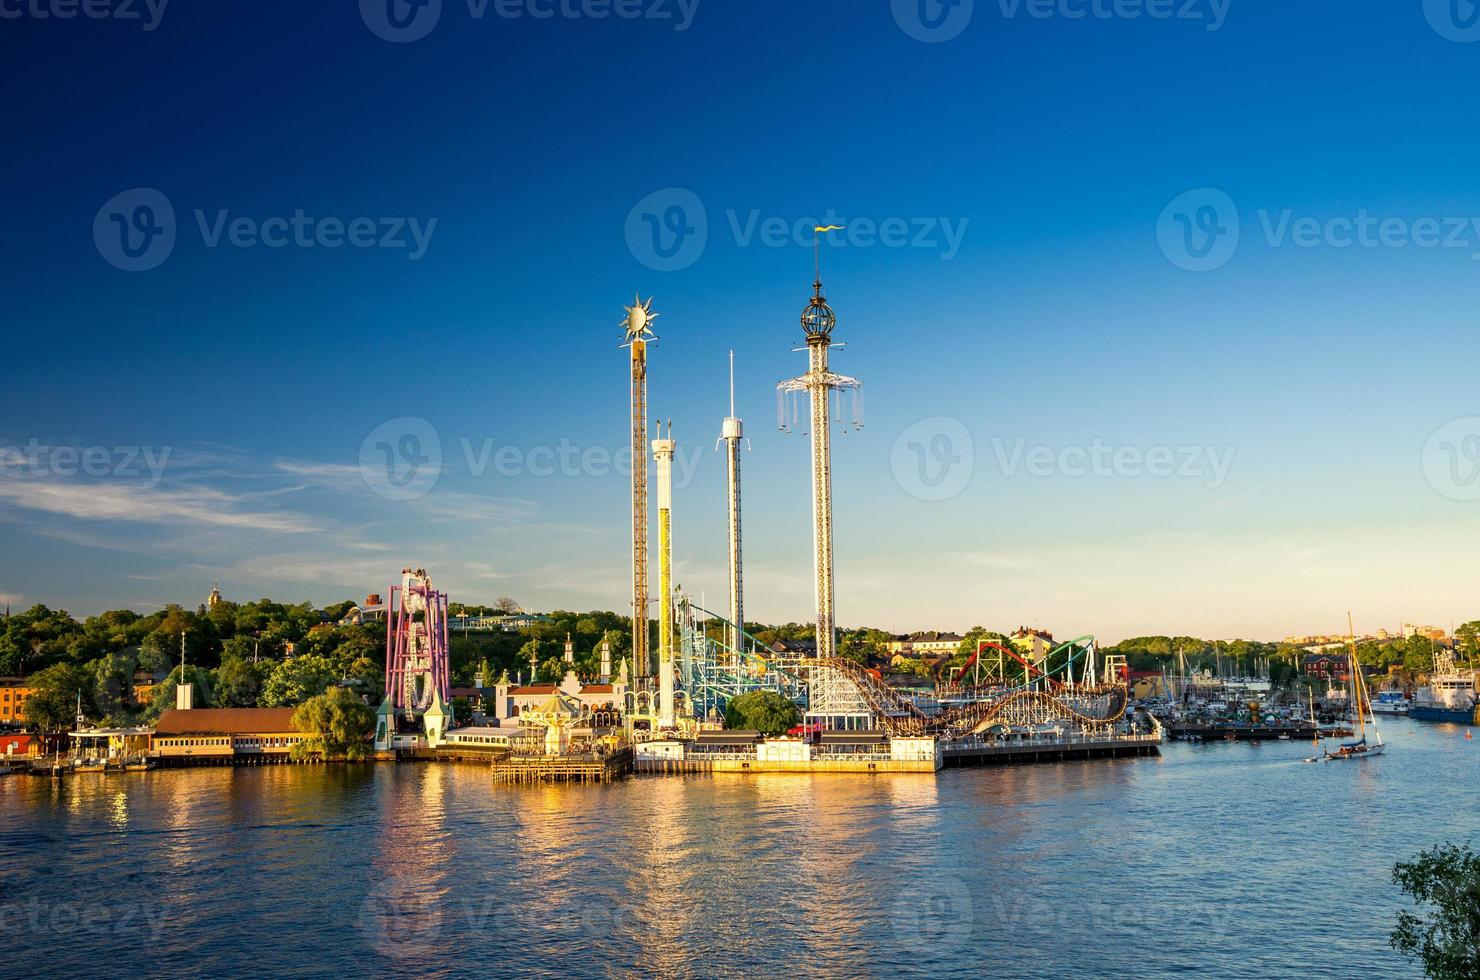 djurgarden ö och tivoli karusell attraktioner, stockholm, sverige foto